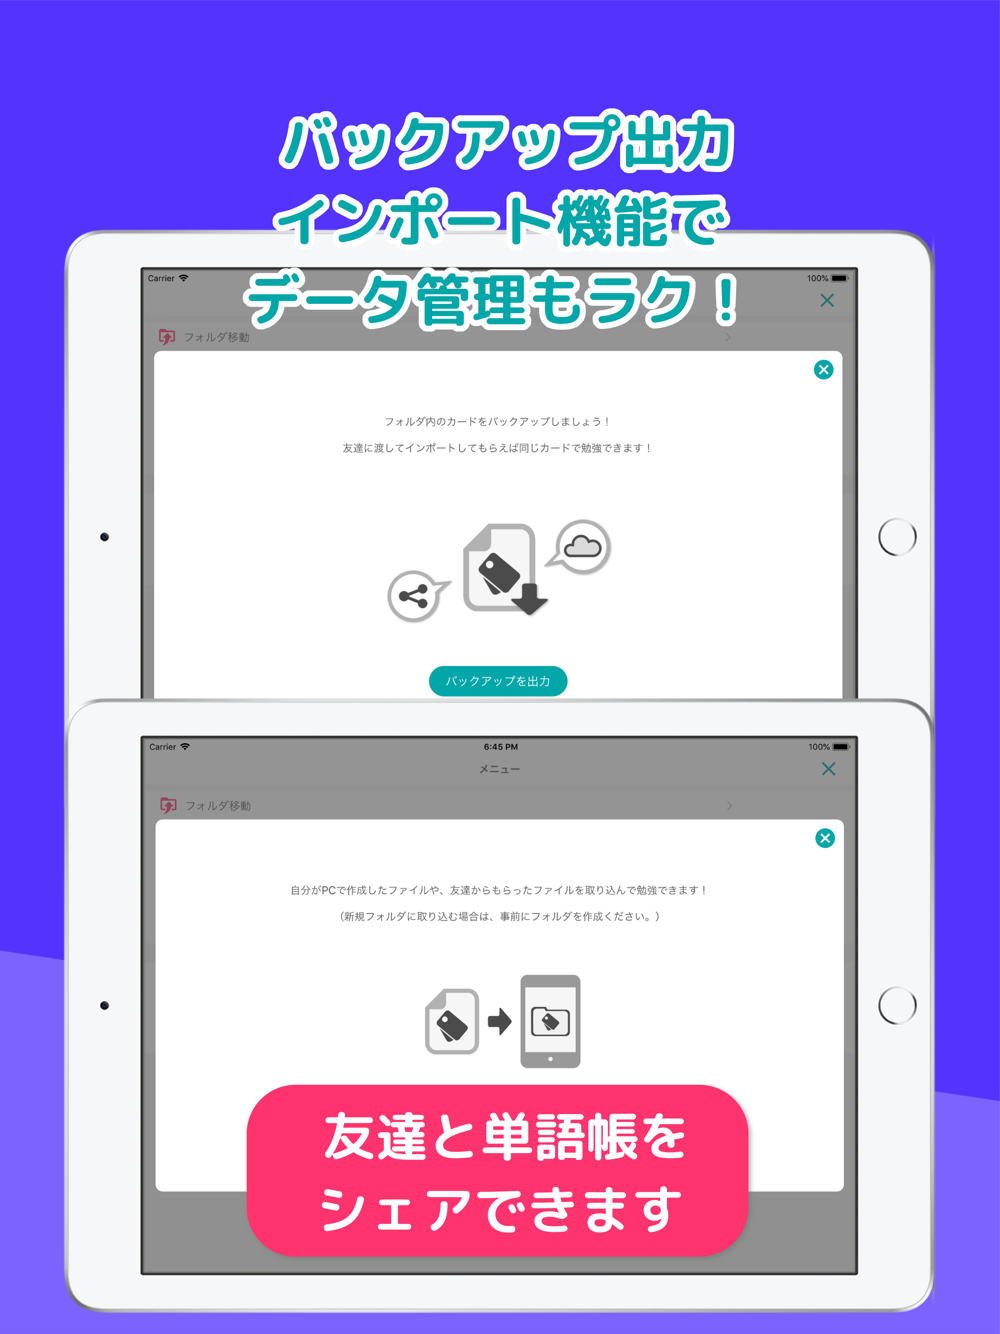 自分で作る単語帳 Wordholic Free Download App For Iphone Steprimo Com